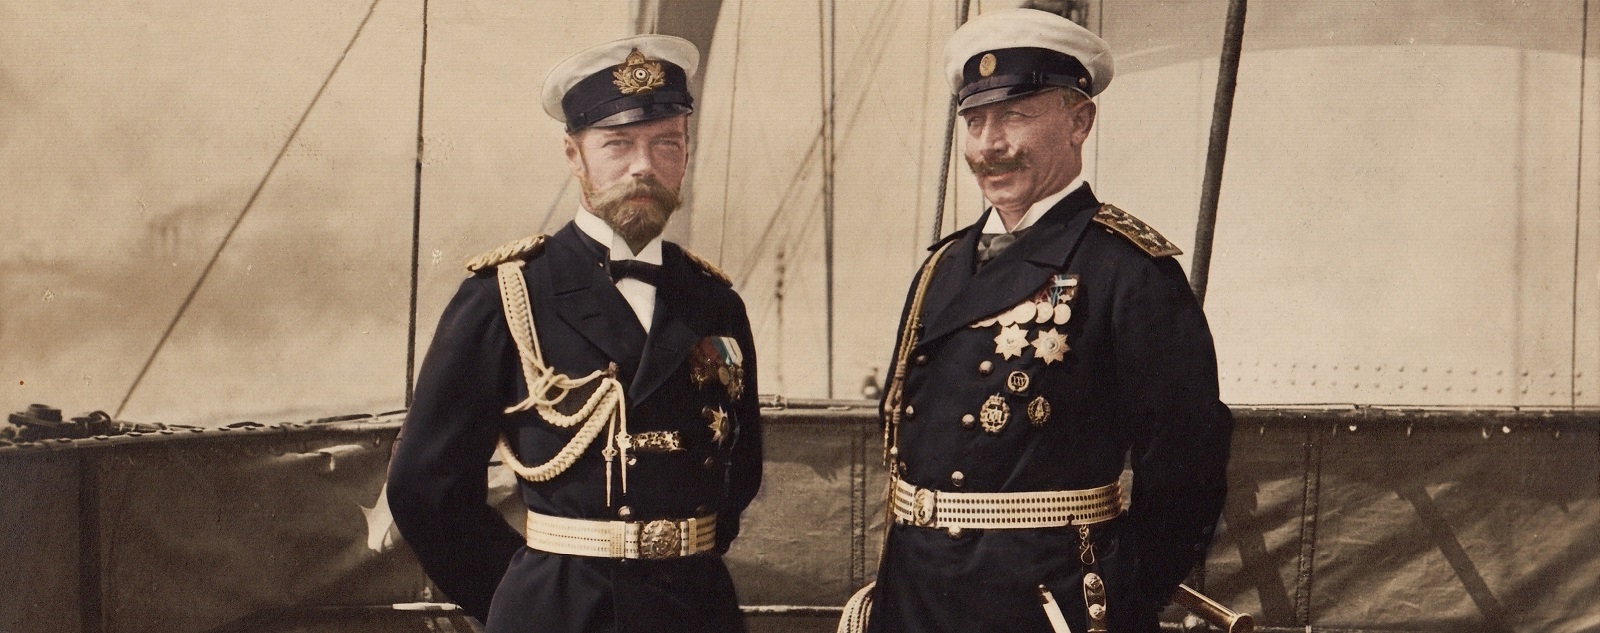 Николай 2 Георг 5 и Вильгельм 2